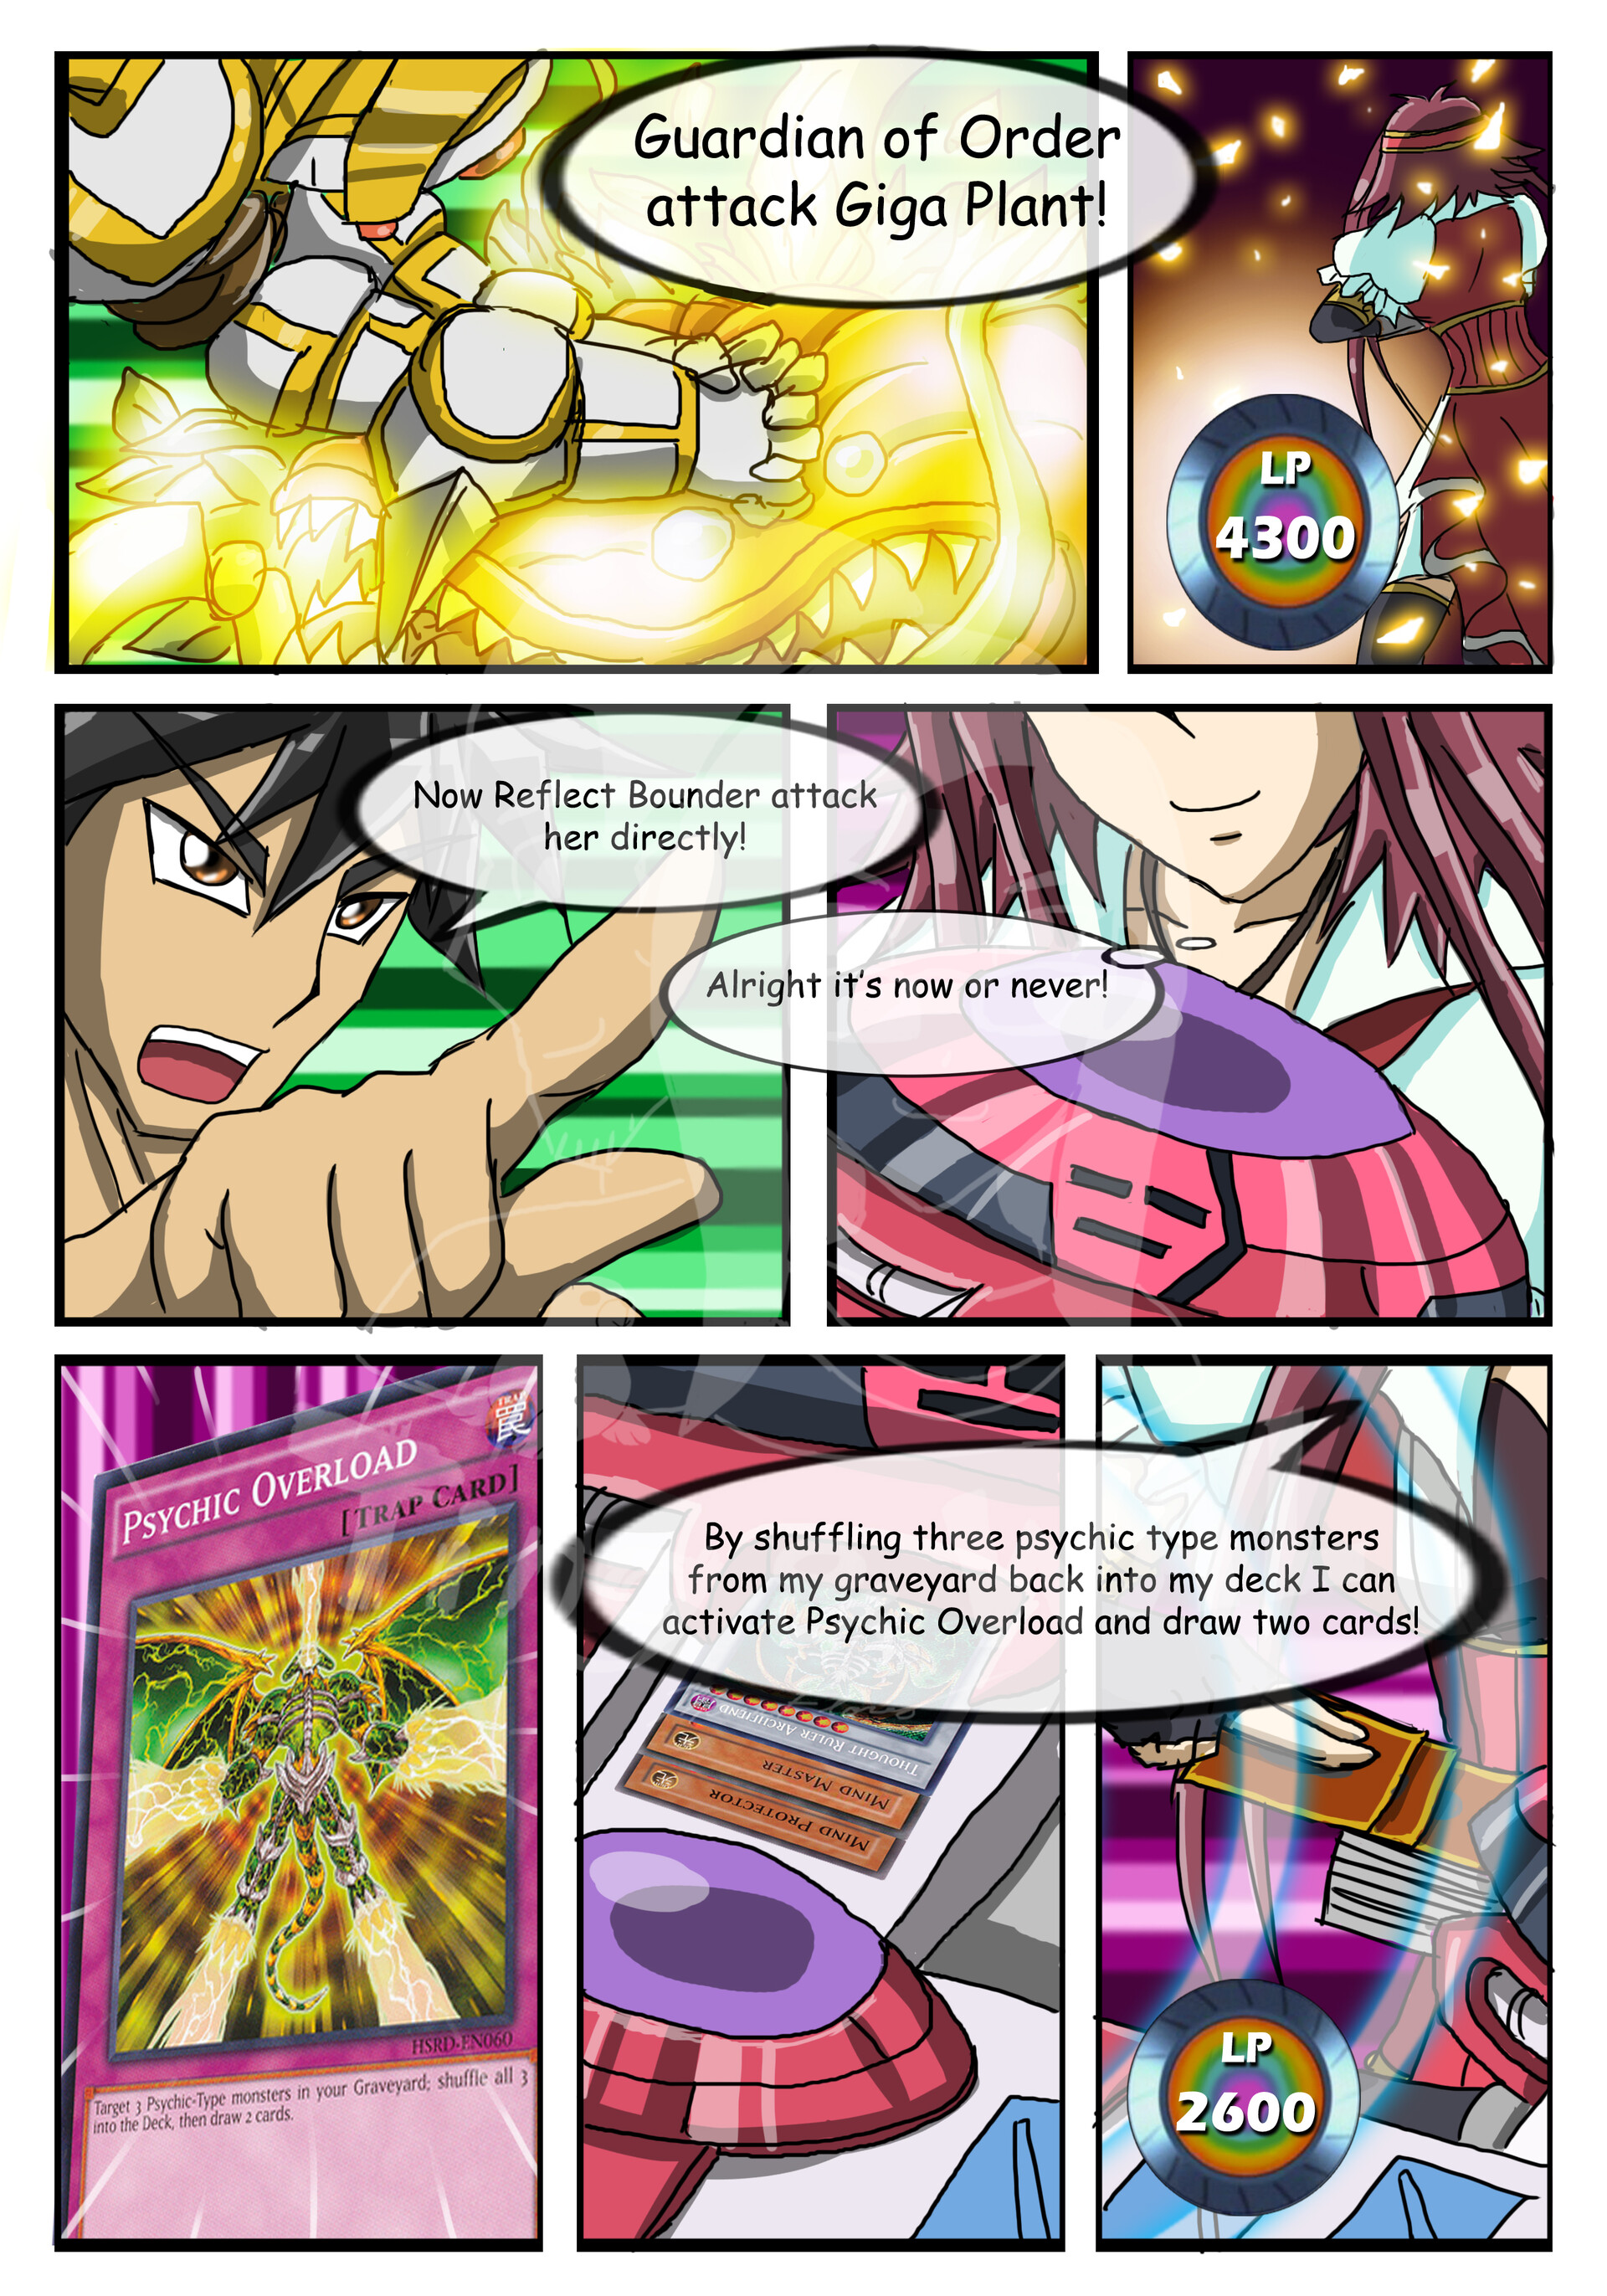 Yu-Gi-Oh! 5D's, Vol. 9 (9)